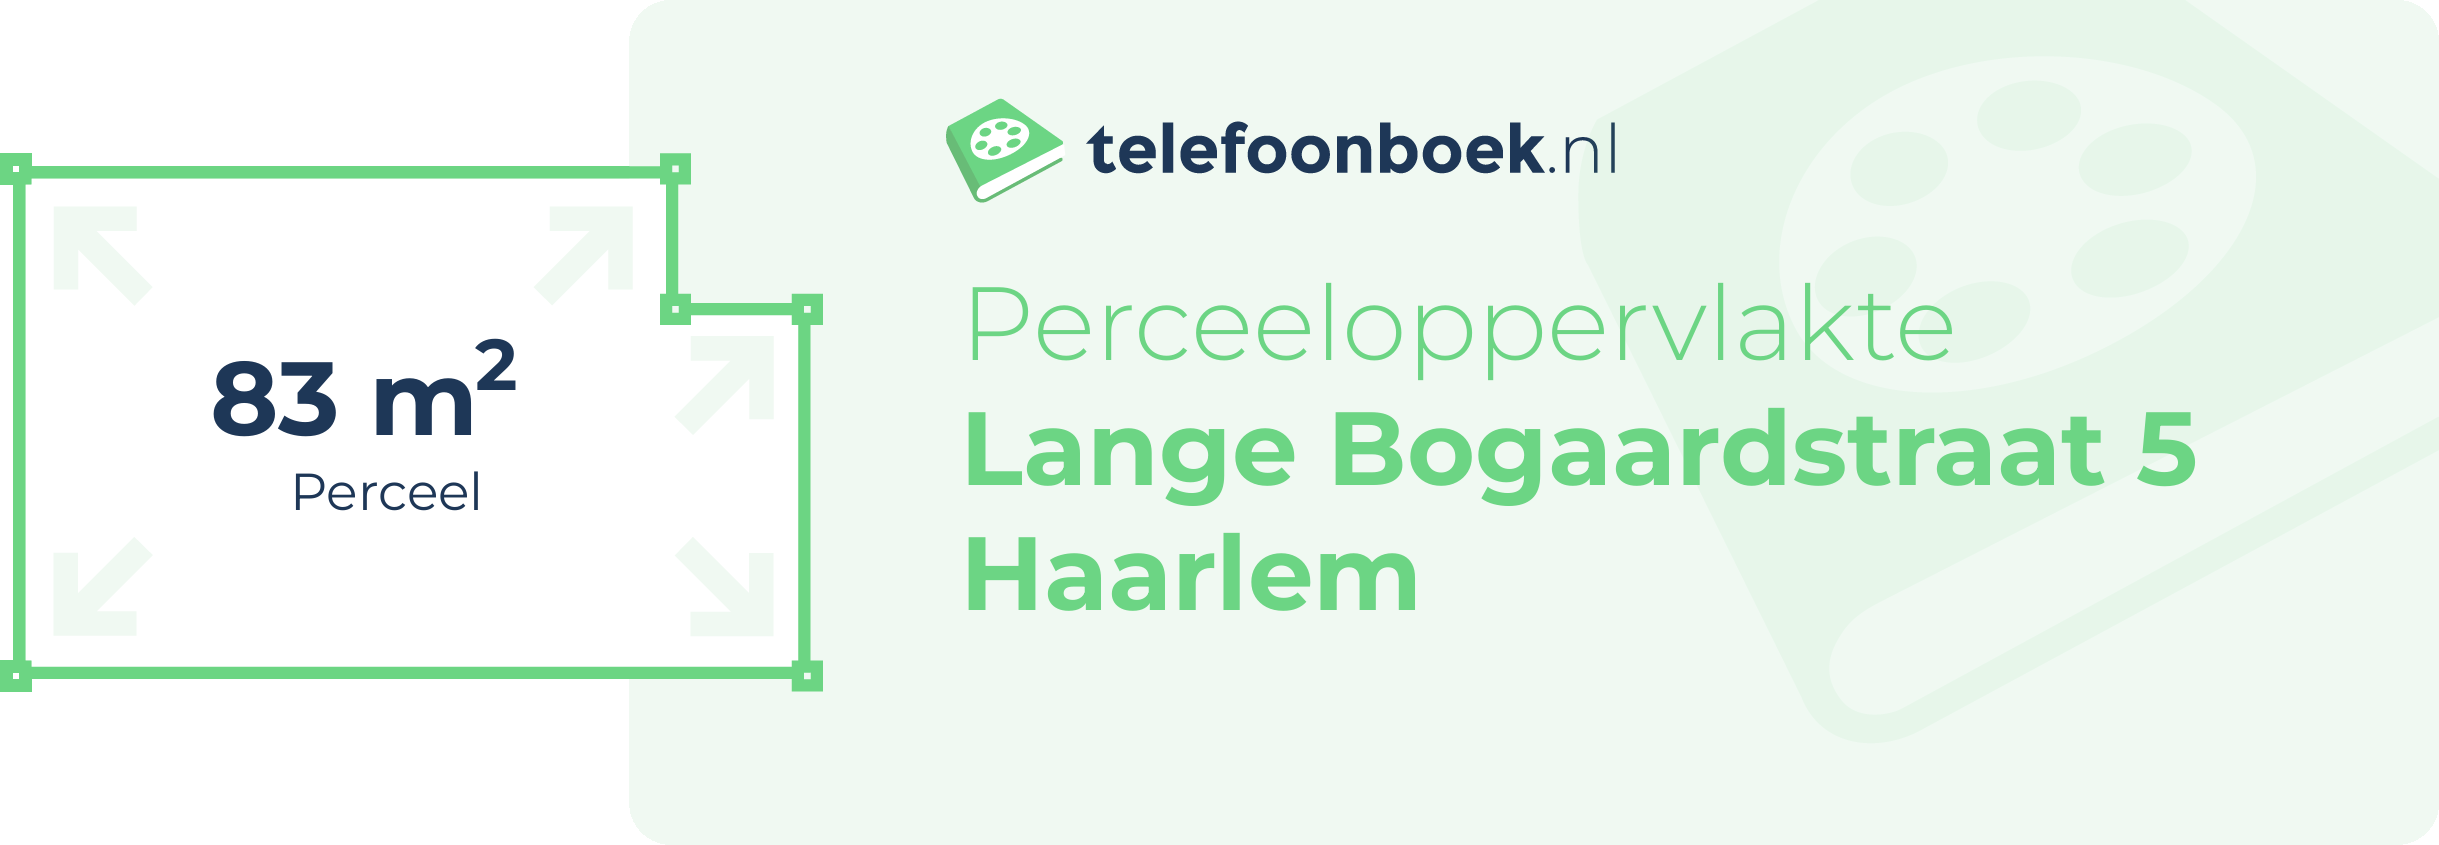 Perceeloppervlakte Lange Bogaardstraat 5 Haarlem